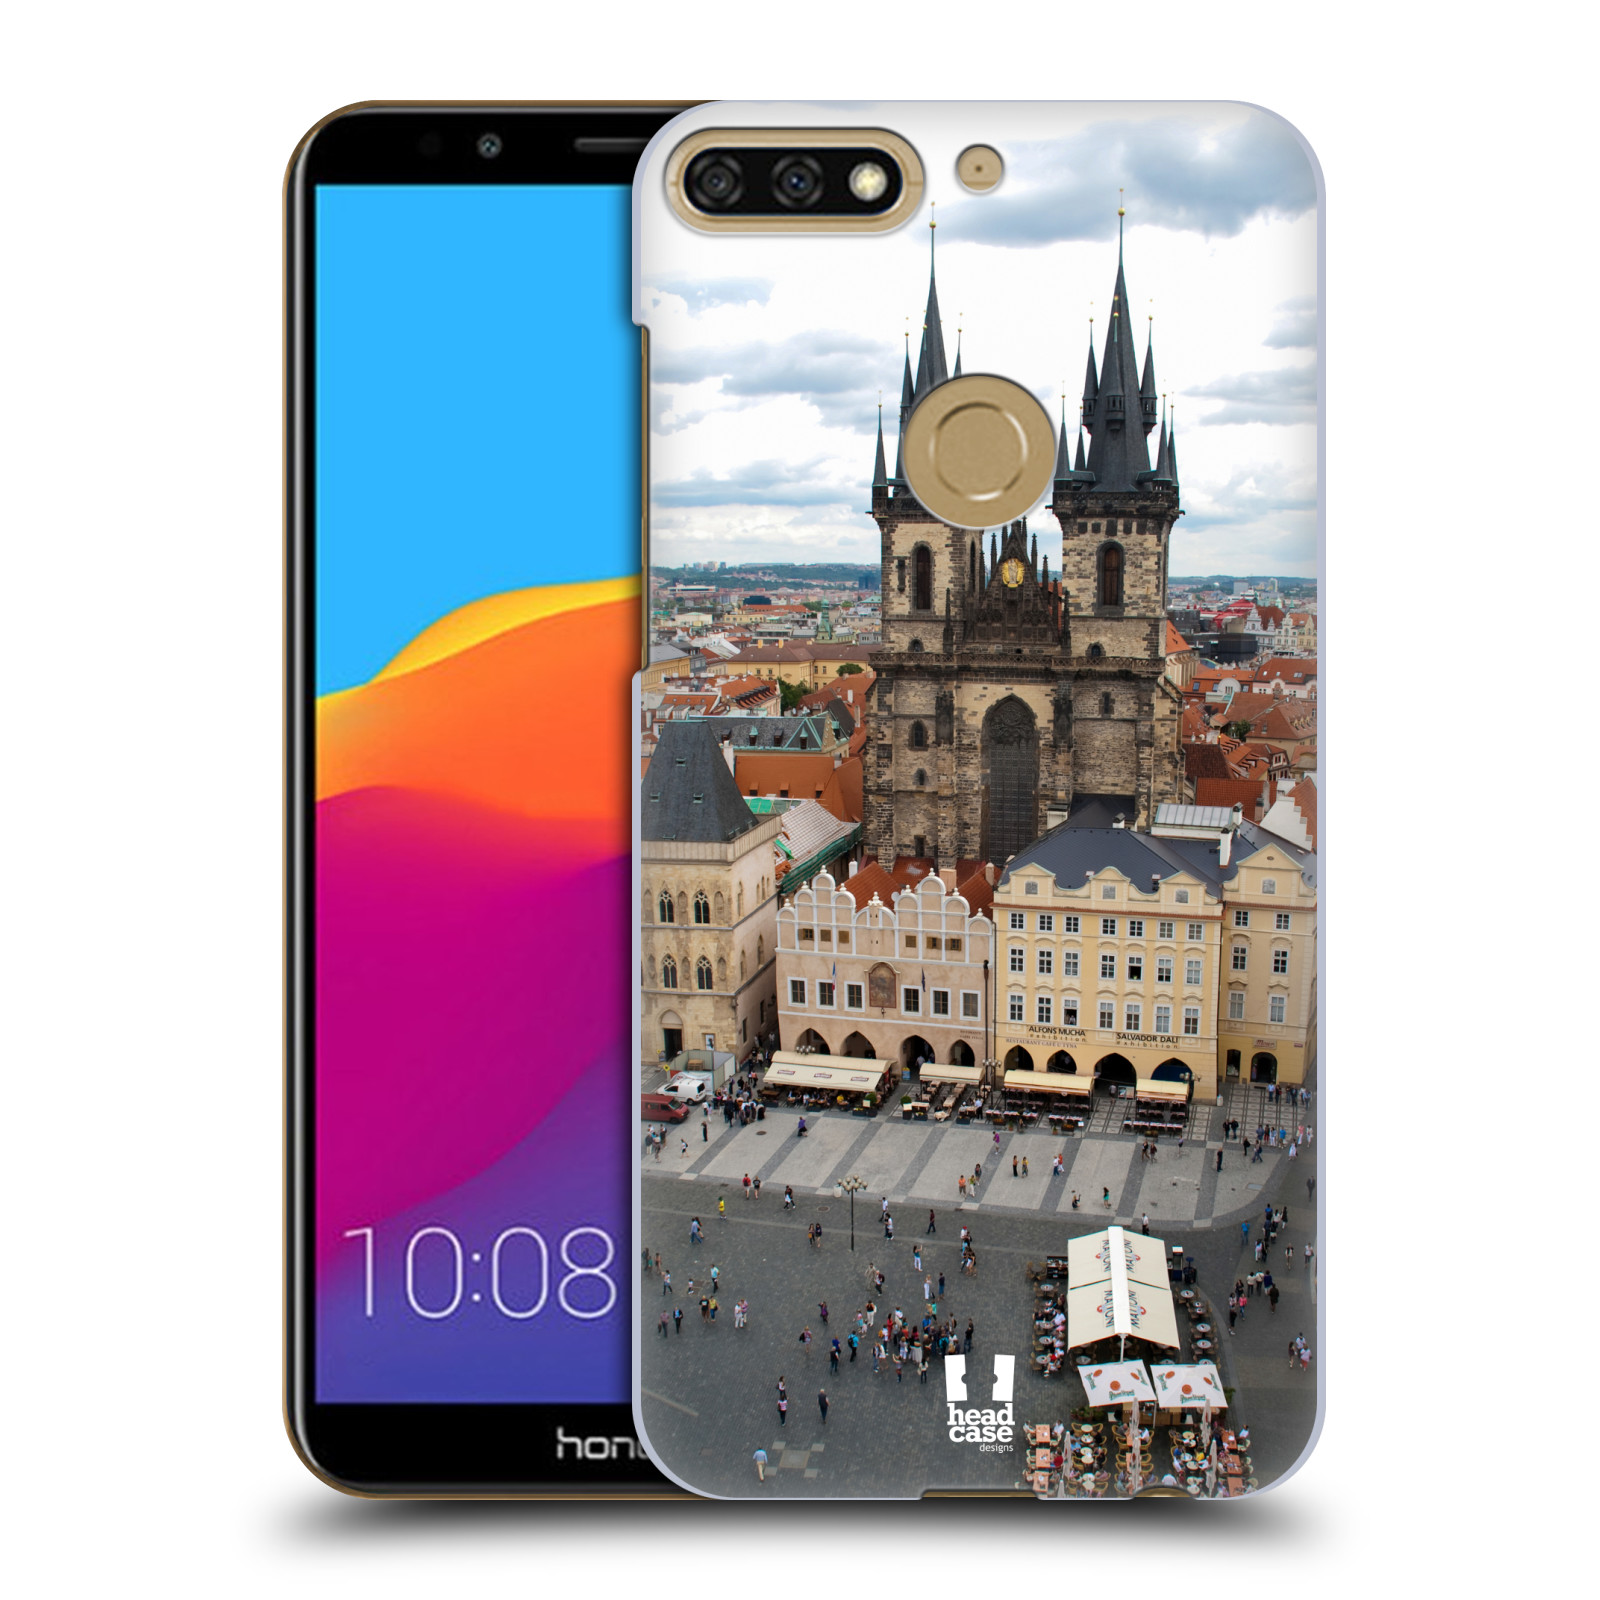 HEAD CASE plastový obal na mobil Honor 7c vzor Města foto náměstí ČESKÁ REPUBLIKA, PRAHA, STAROMĚSTSKÉ NÁMĚSTÍ